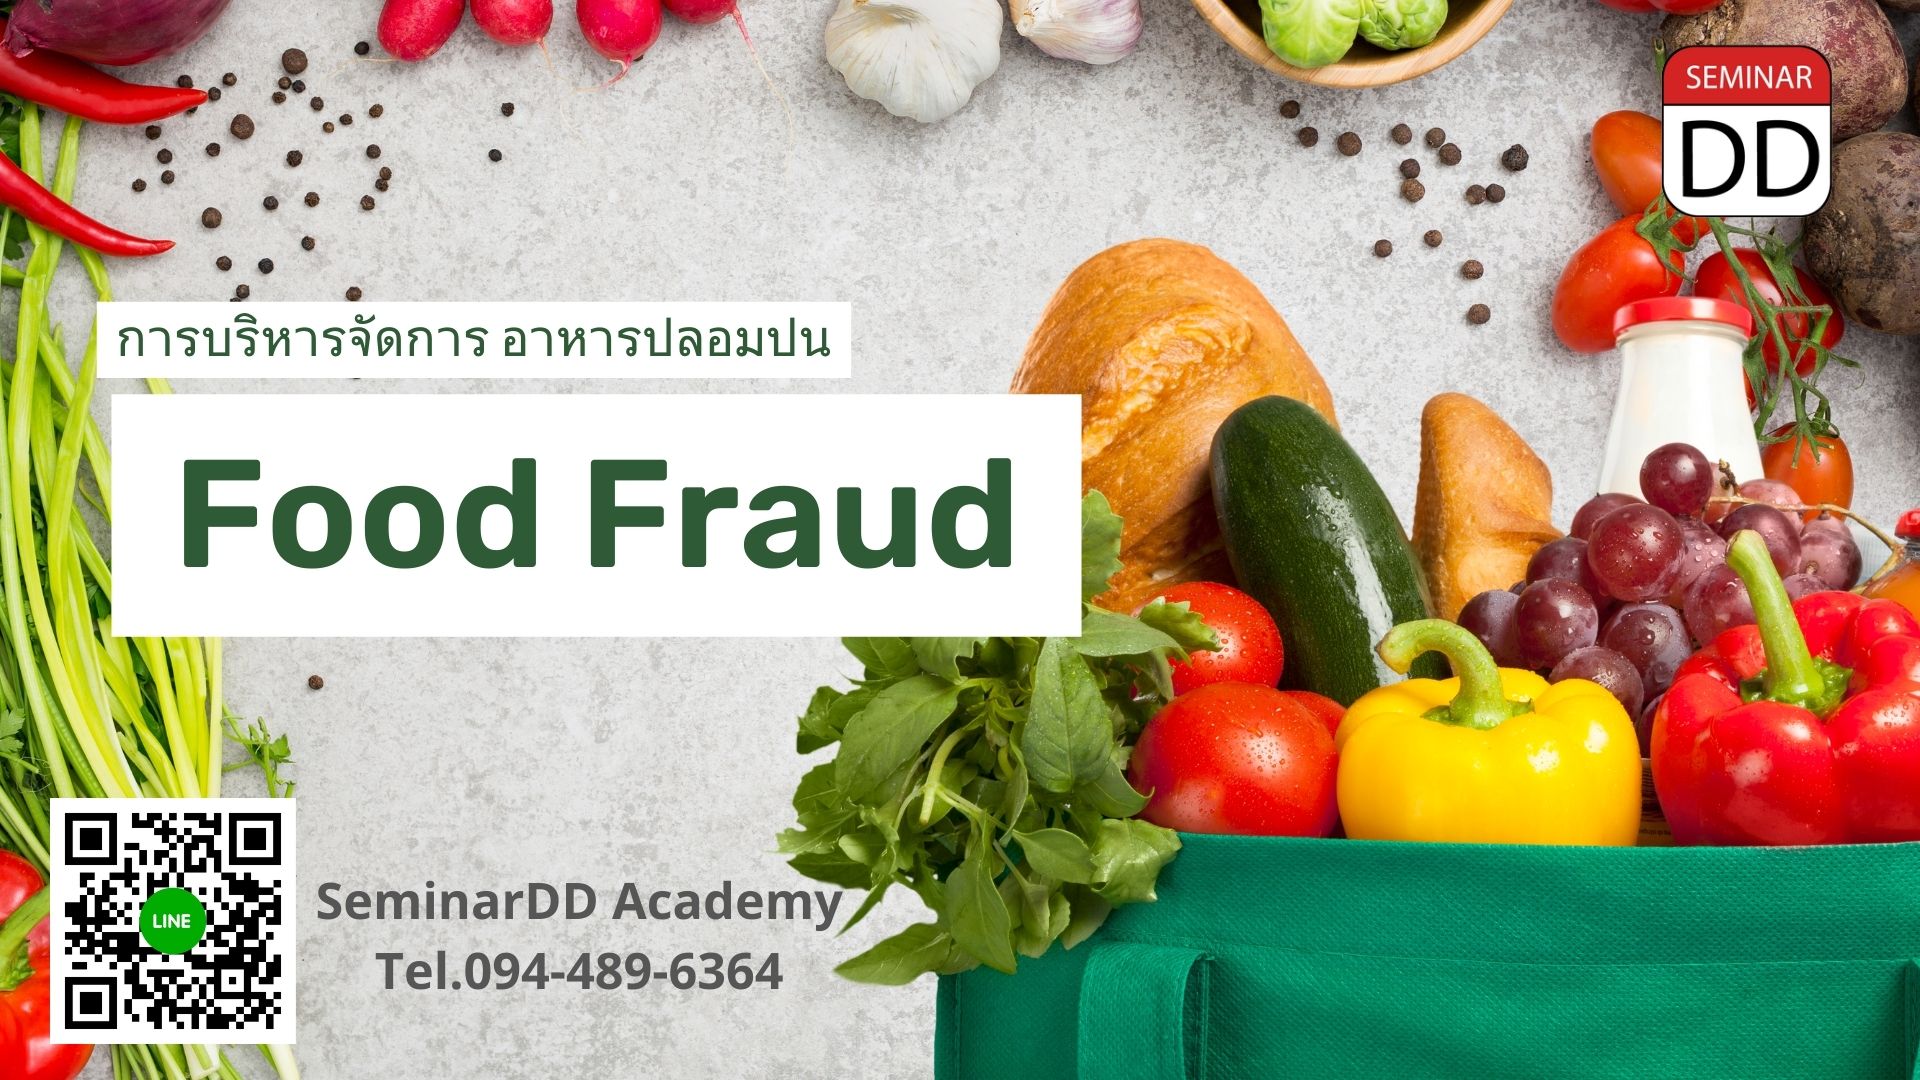 หลักสูตร การบริหารจัดการ อาหารปลอมปน  ( Food Fraud )